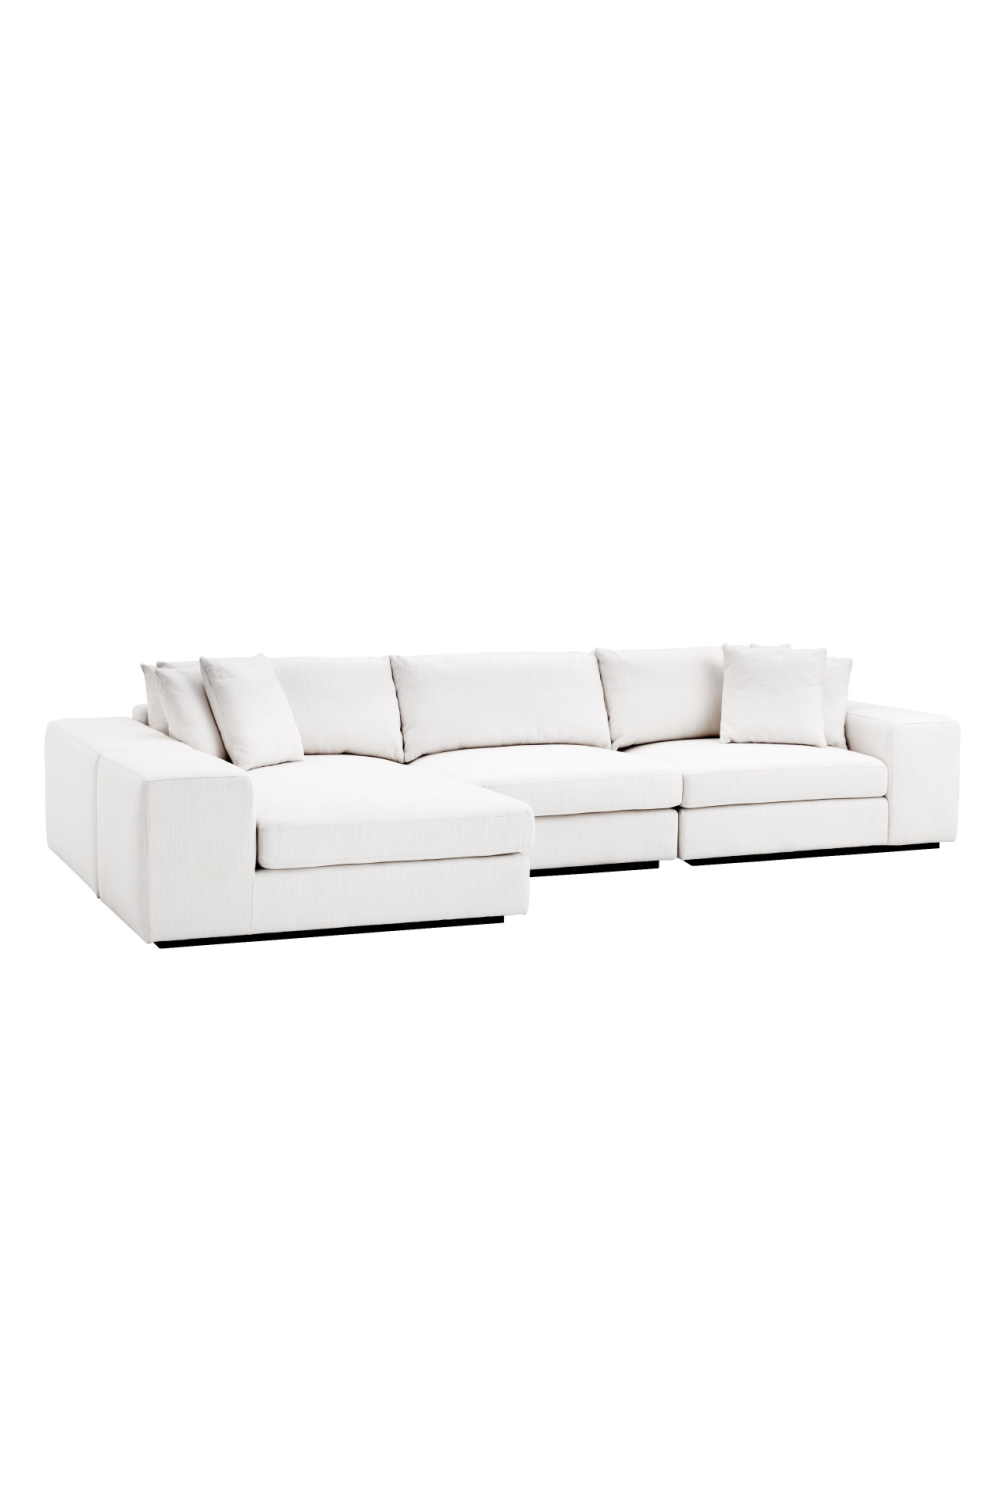 White Sectional Sofa | Eichholtz Vista Grande | Oroa.com